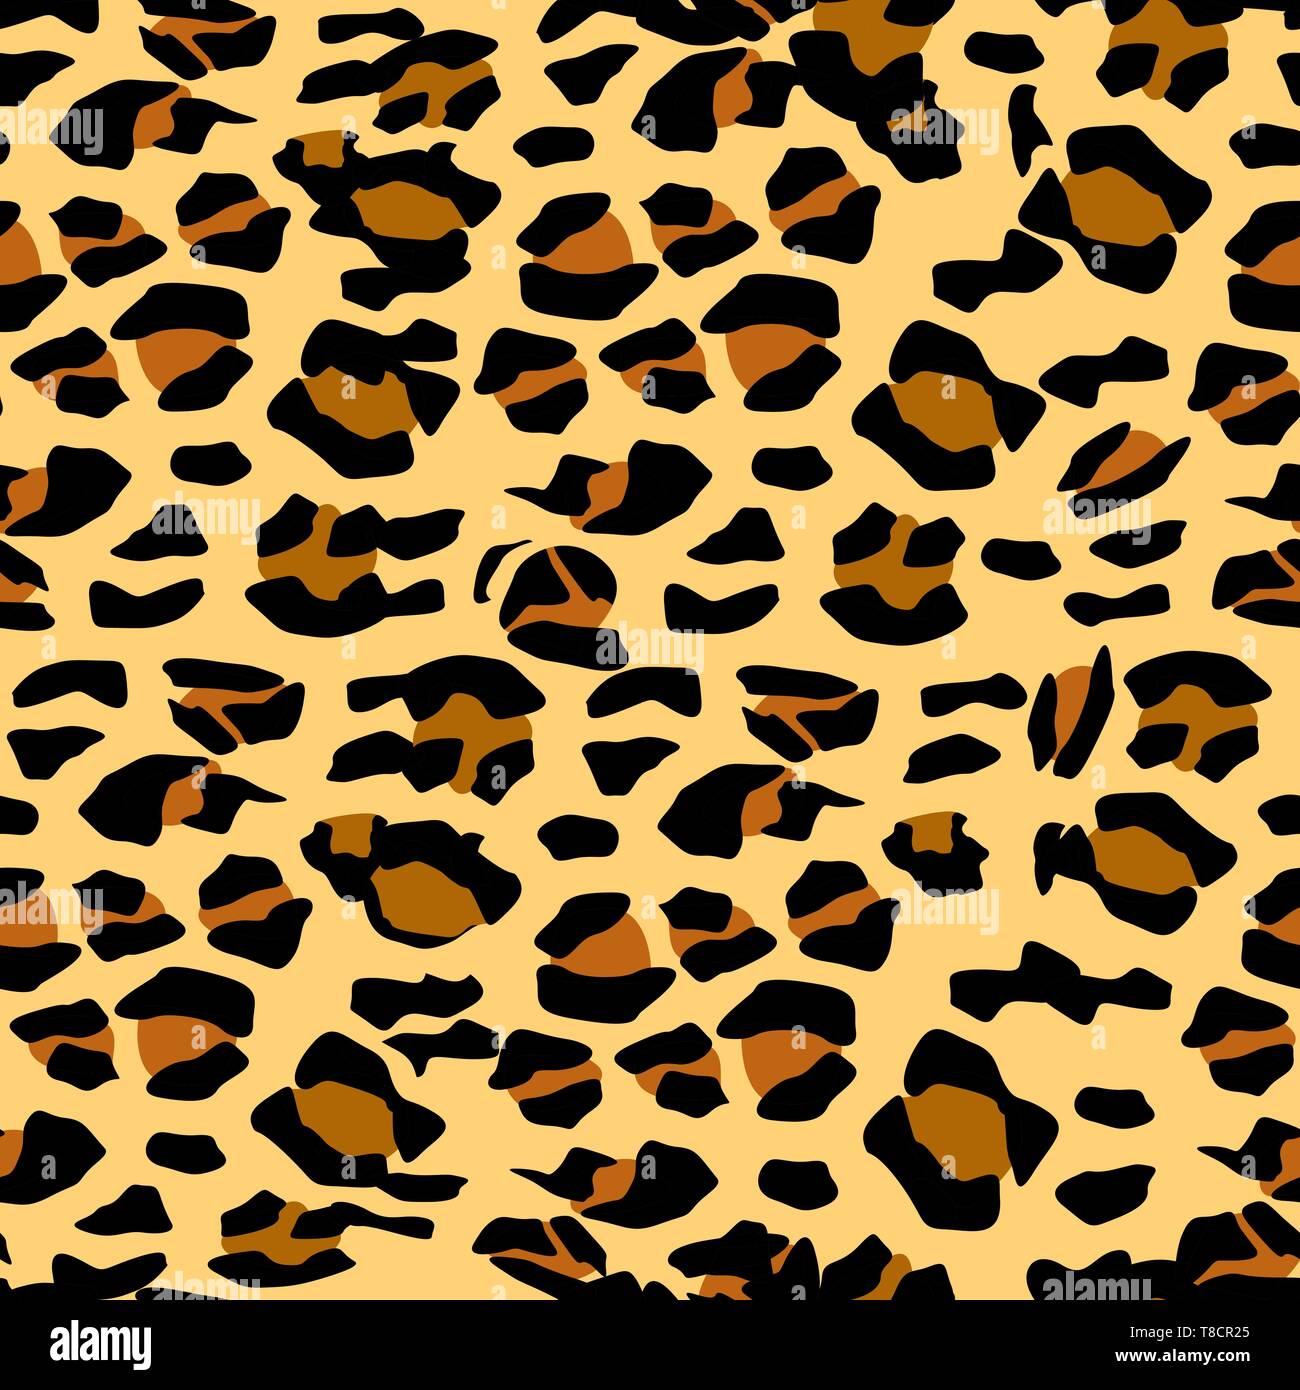 Leopardenmuster. Die nahtlose Vektor drucken. Realistische Tier Textur. Schwarze  und gelbe Flecken auf einem beigen Hintergrund. Abstrakte, sich  wiederholendes Muster - Leopard Stock-Vektorgrafik - Alamy